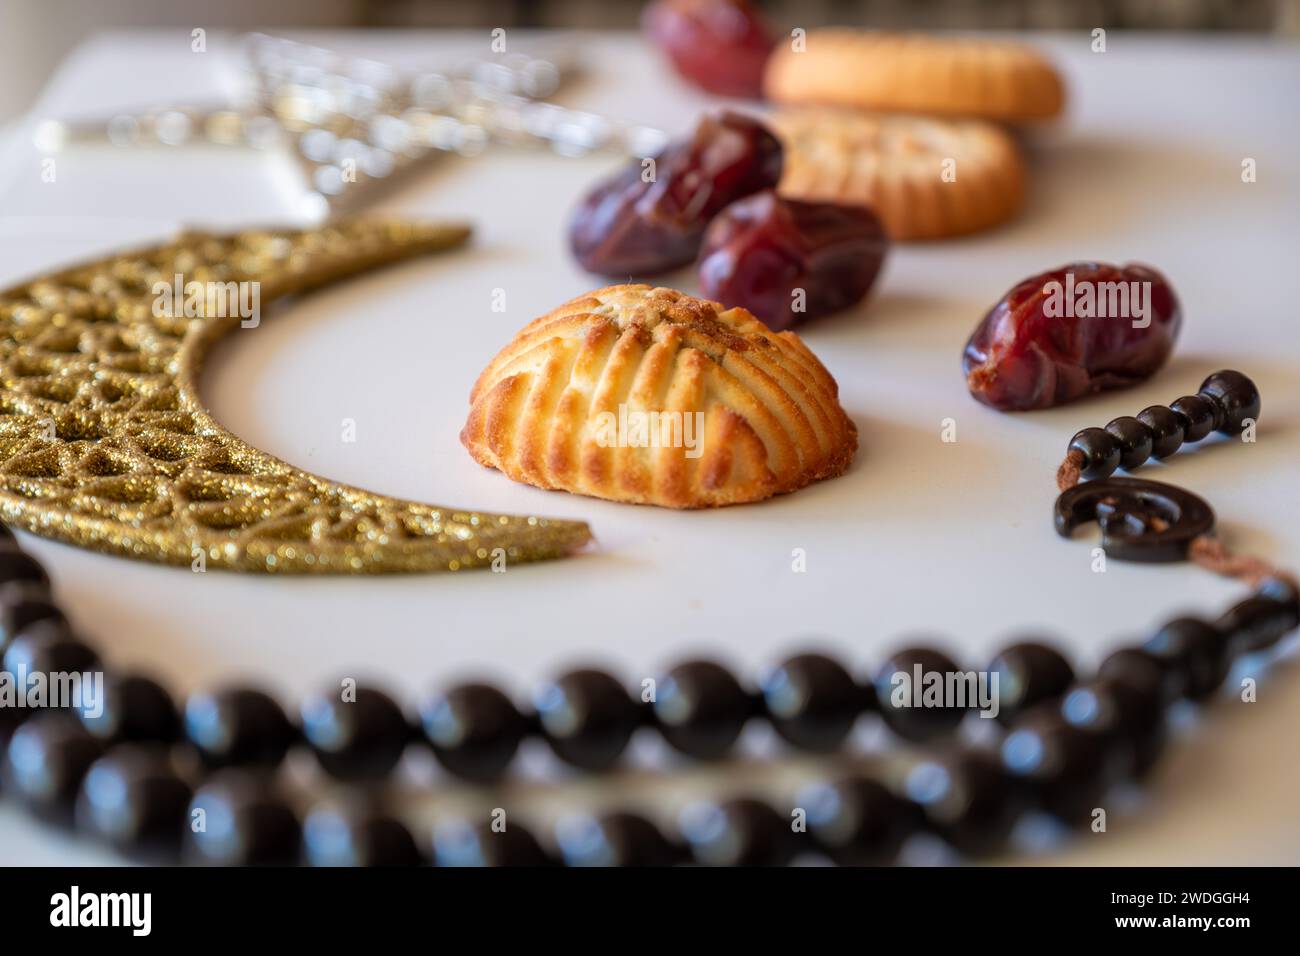 Es gab eine Auswahl an Grießmaamoul-Keksen mit Sichel-, Stern- und Ramadan-Dekorationen. Traditionelle arabische Süßigkeiten für Eid al Adha und Eid al Fitr c Stockfoto